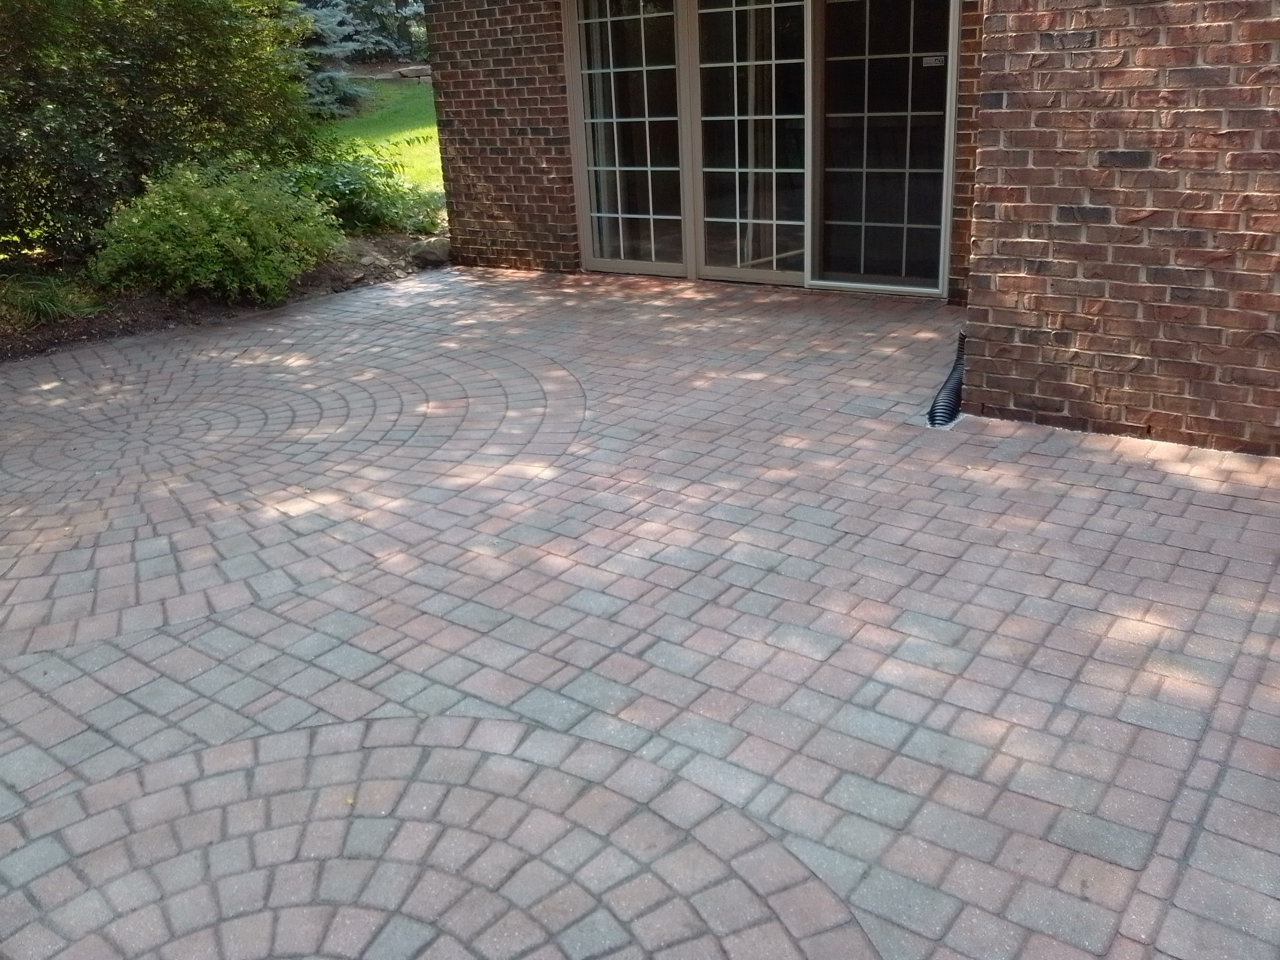 Whorled brick patio